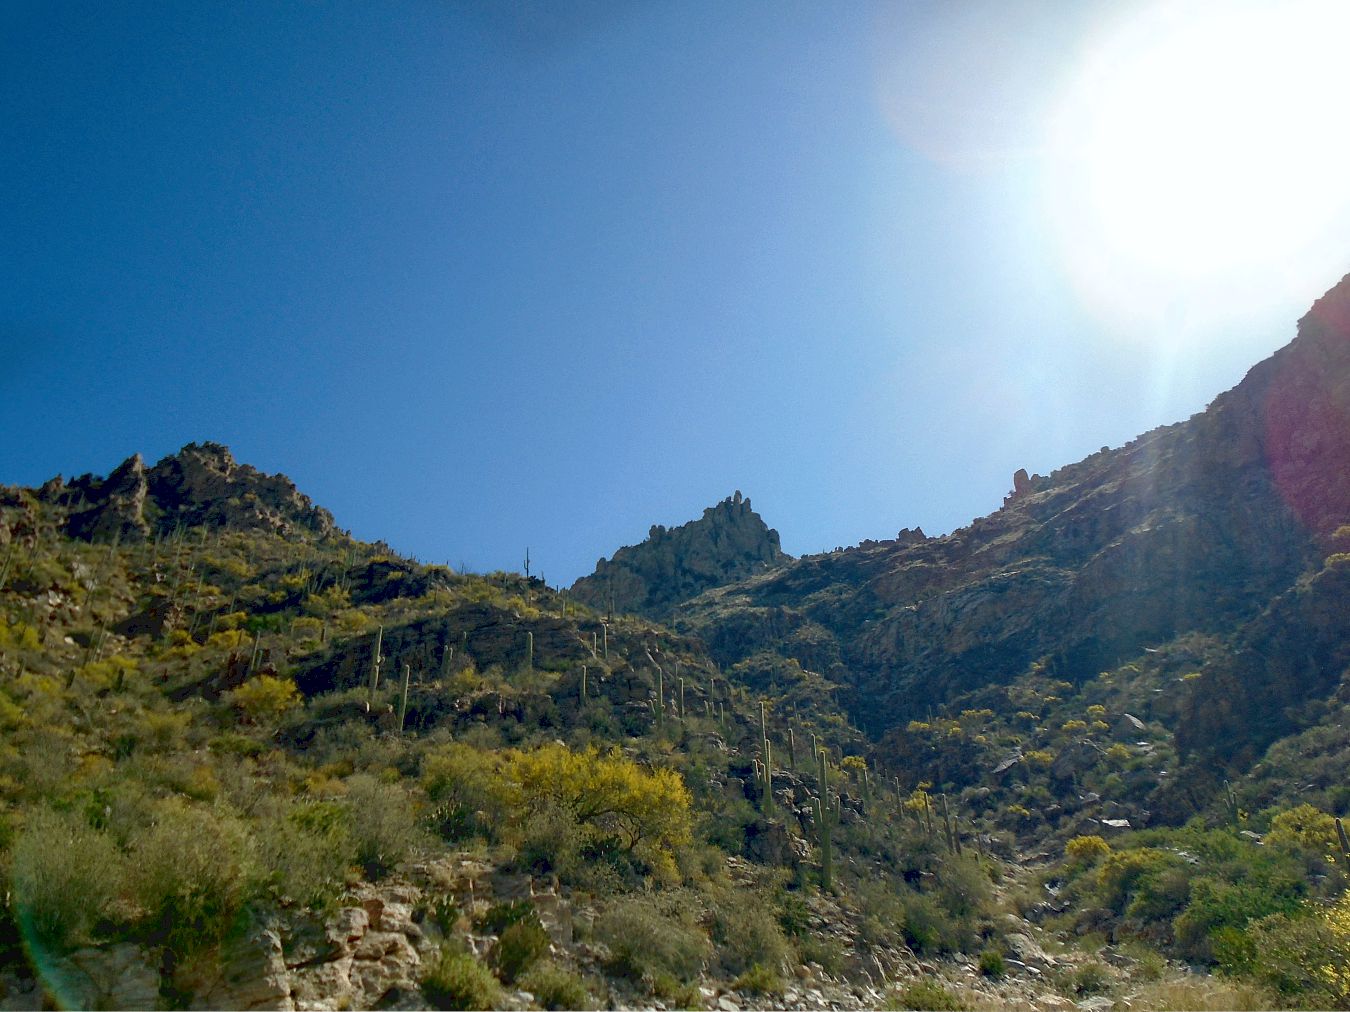 Sabino Canyon at the top